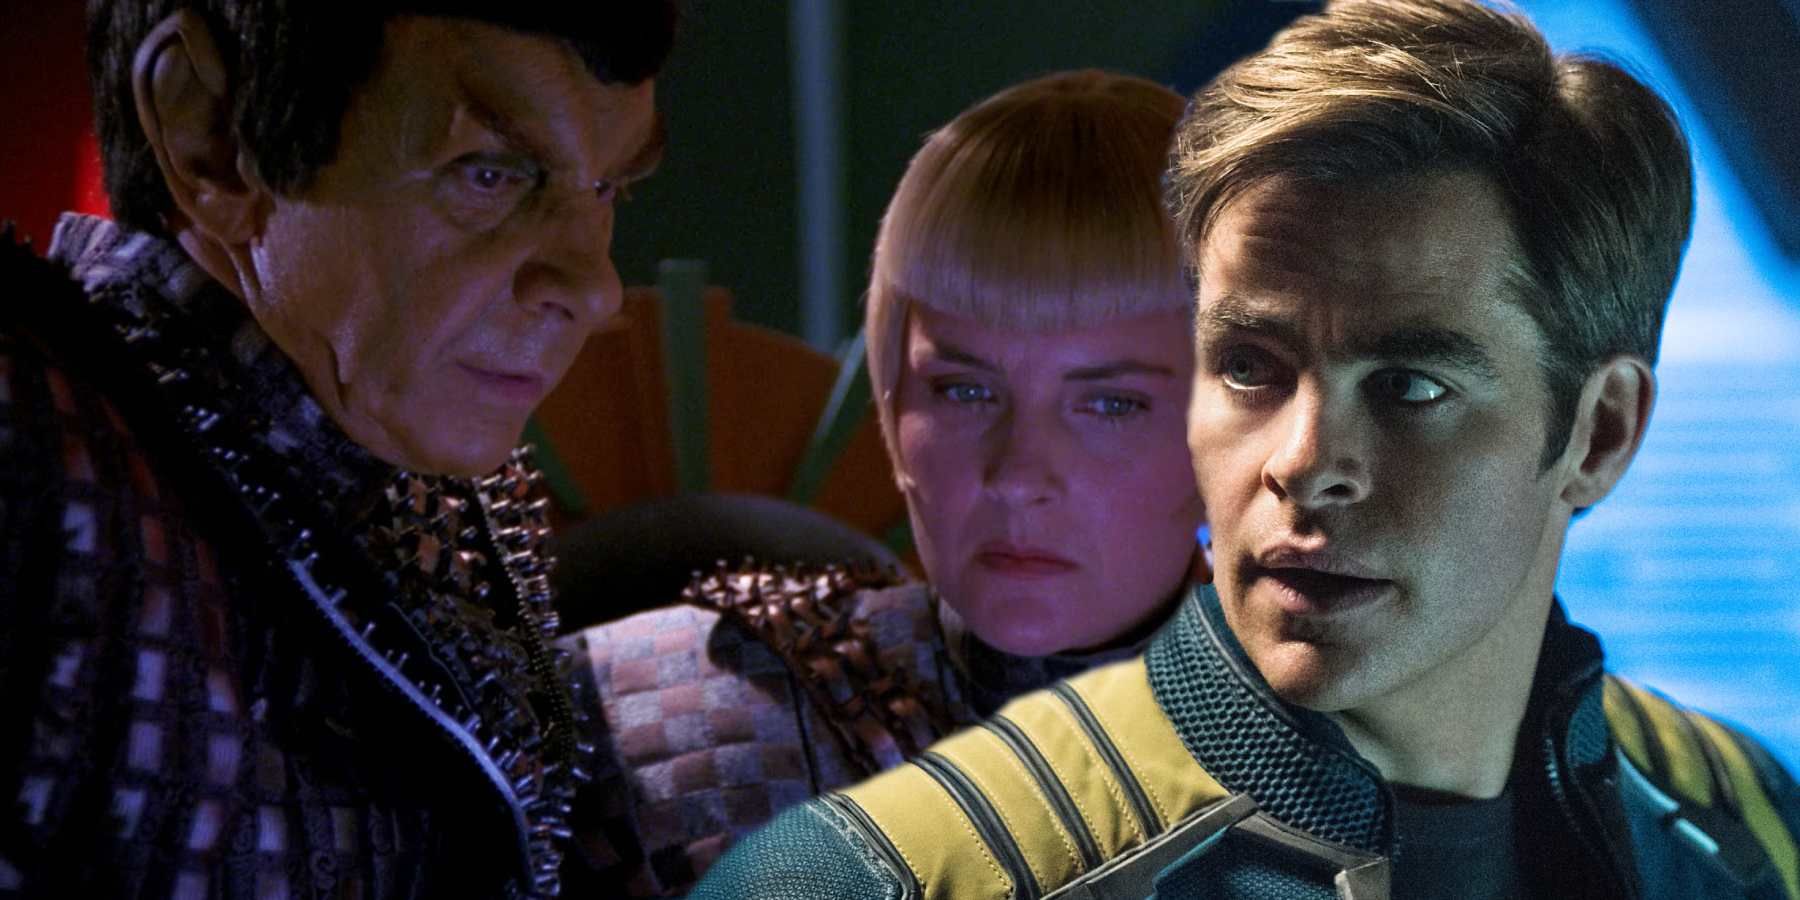 The Star Trek: TNG Romulans and Chris Pine as Captain Kirk